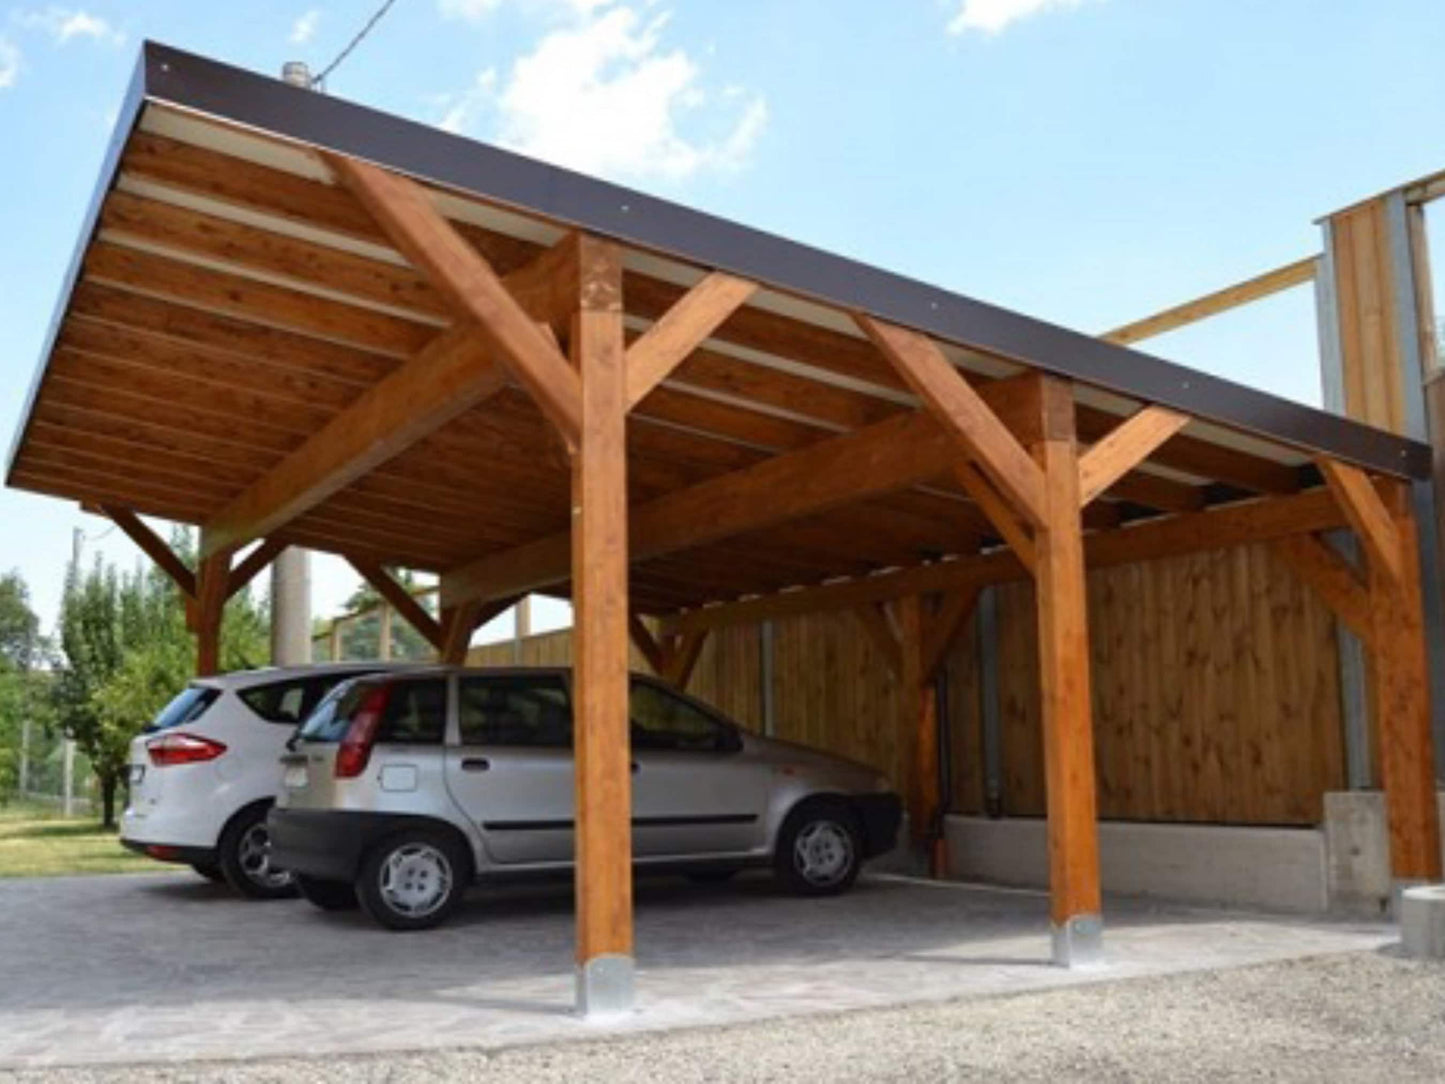 18x24 single slope Carport Plans Diy - Car Garage for Two Car - Wooden Car Port